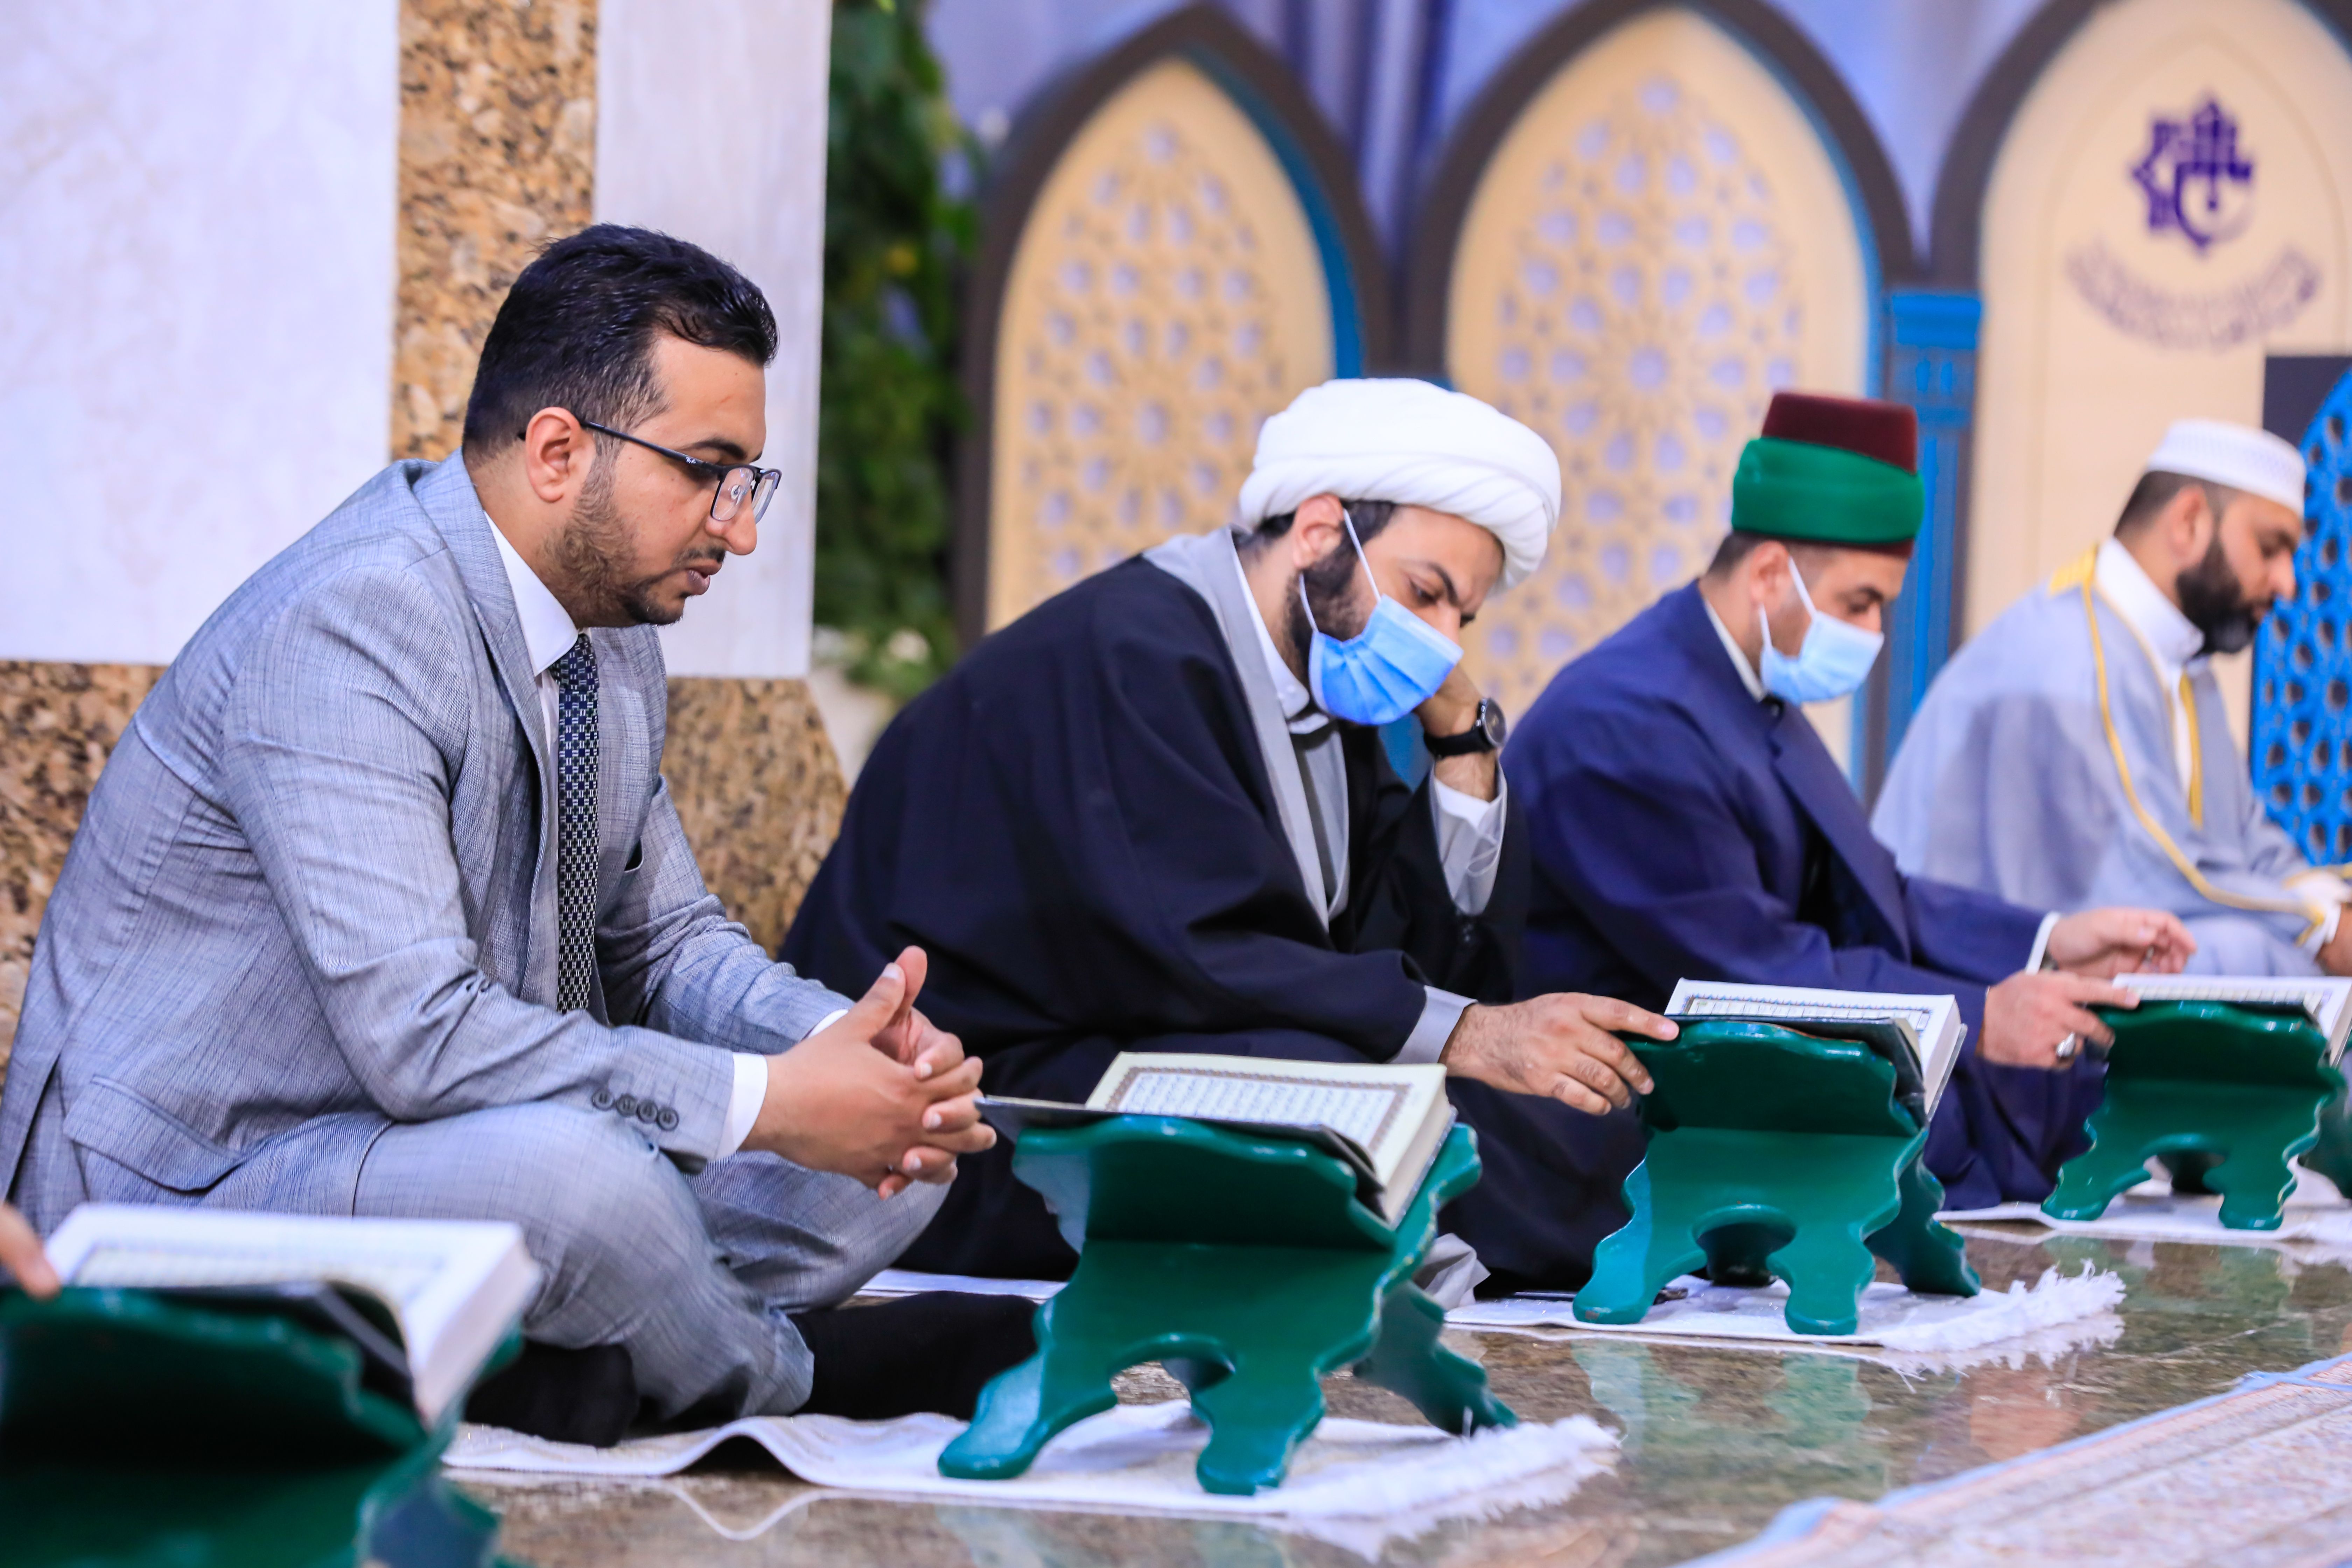 معهد القرآن الكريم يطلق الختمة القرآنية الرمضانية المرتلة وفق اجراءات الوقاية الصحية